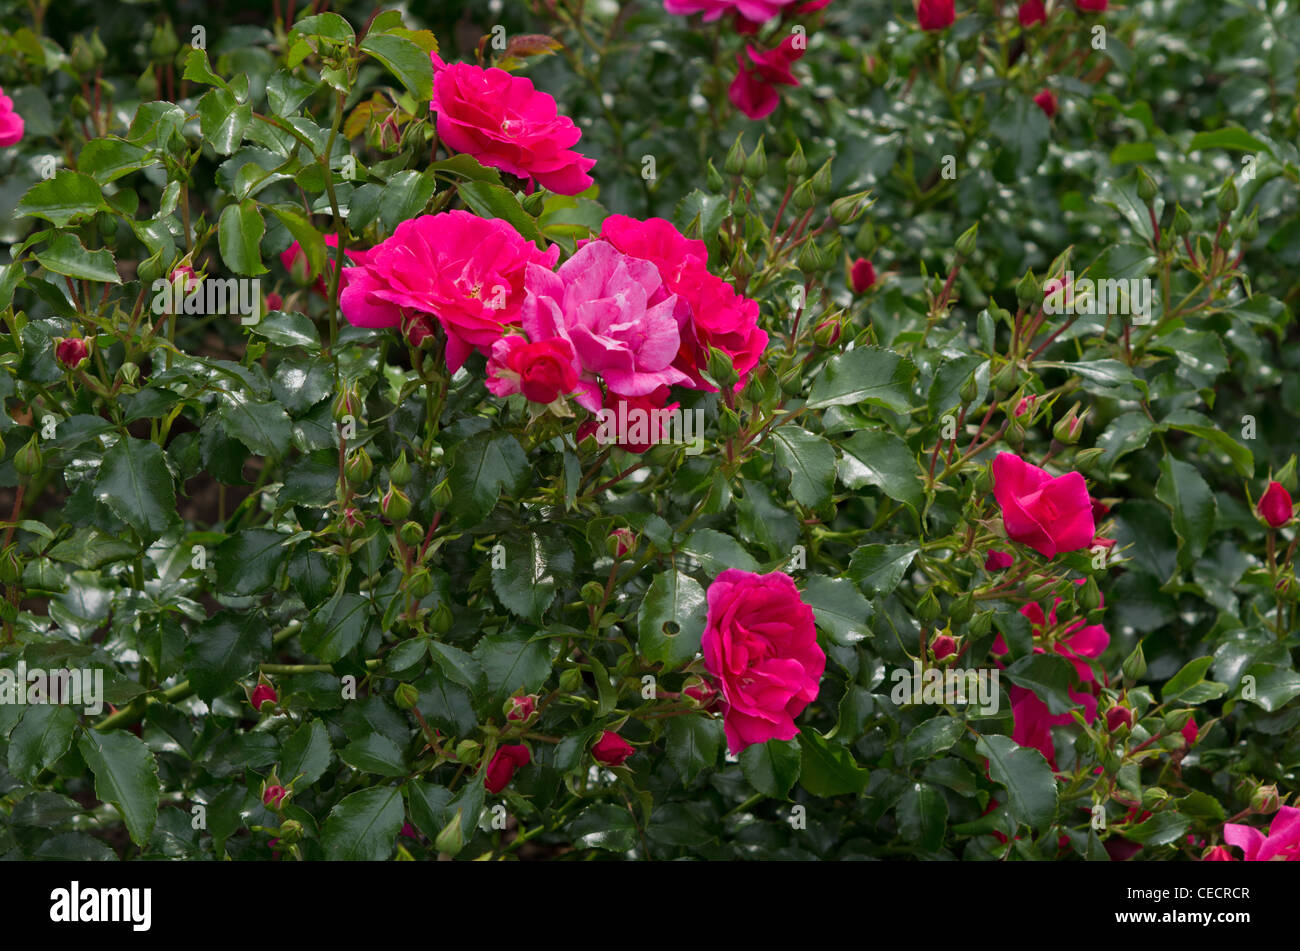 Modern shrub rose Flower Carpet Stock Photo